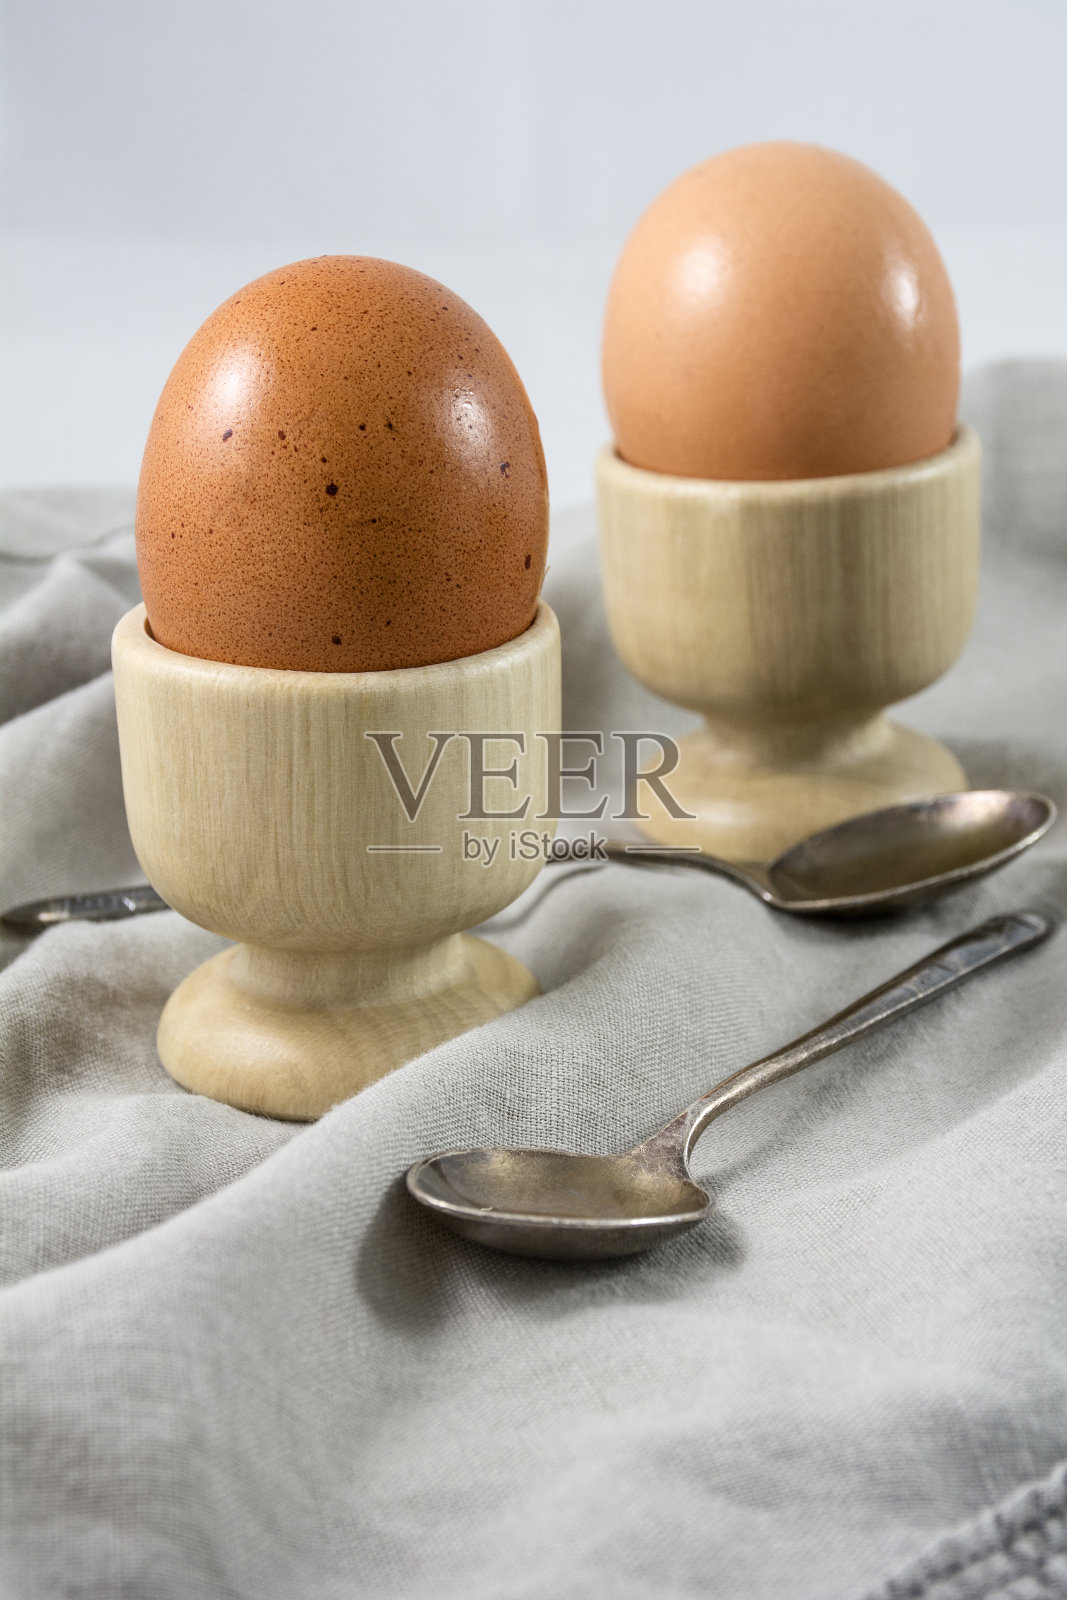 用勺子将煮熟的鸡蛋放入鸡蛋杯中照片摄影图片